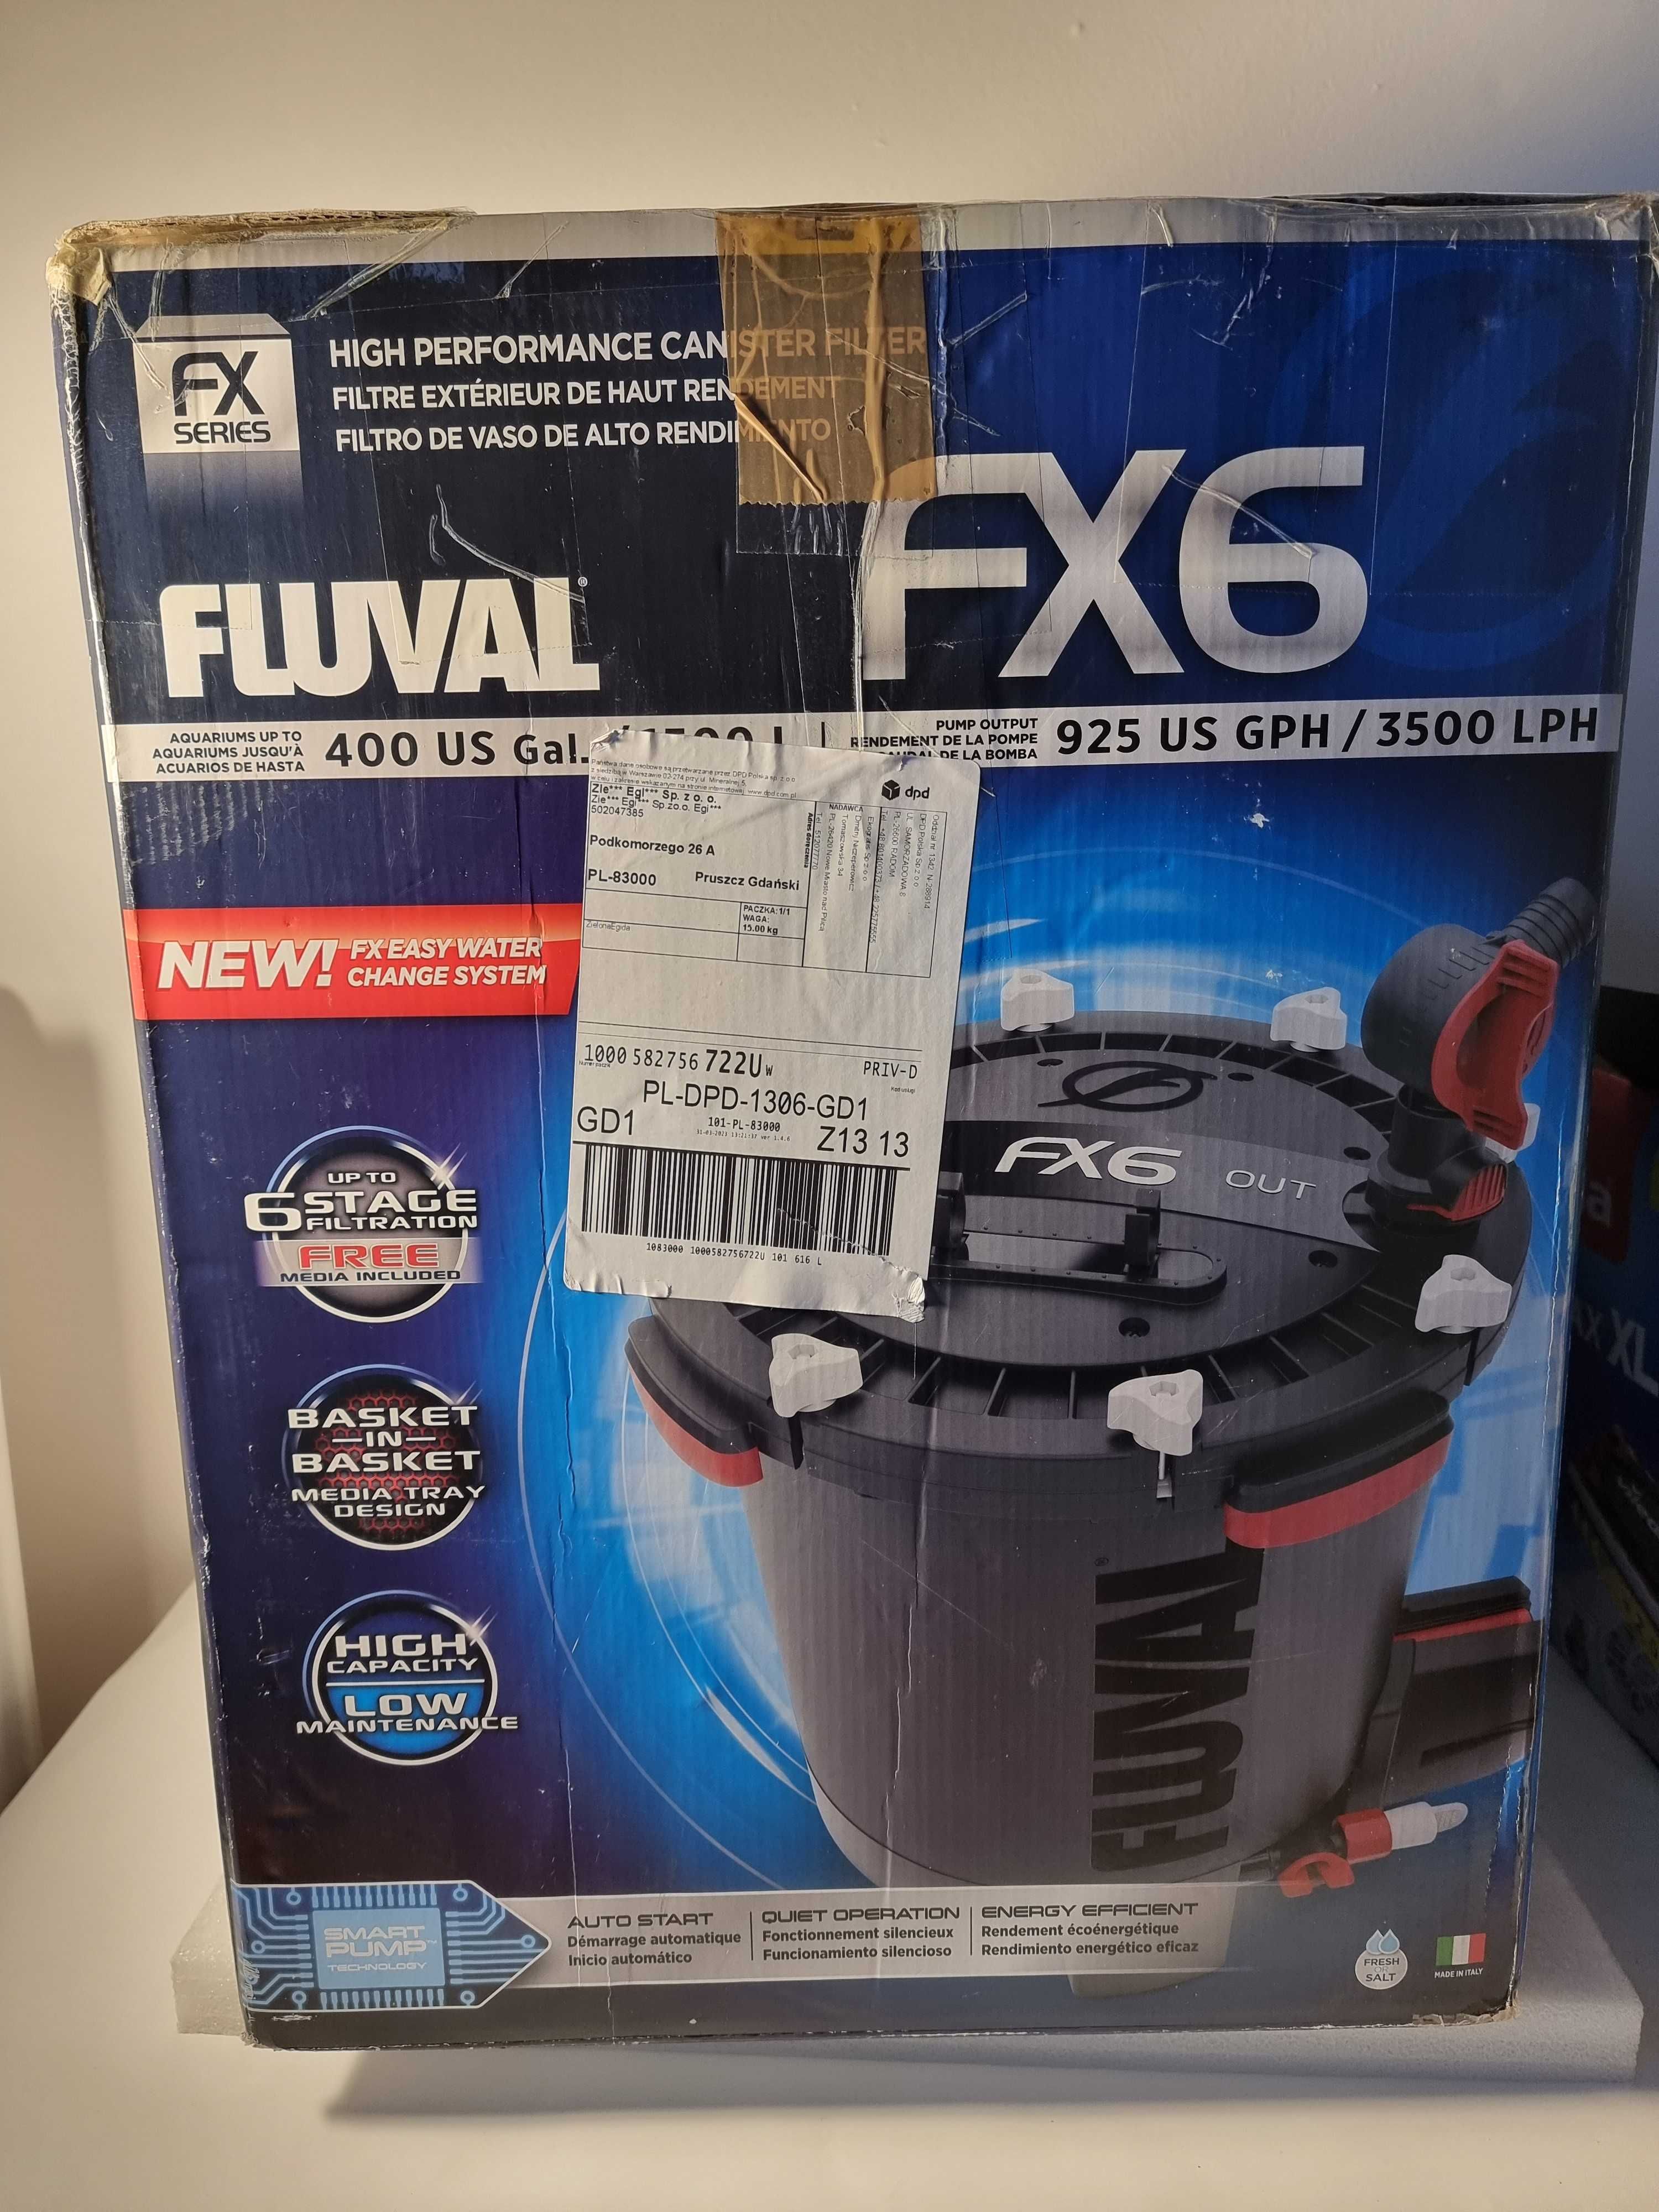 Filtr zewnętrzny kubełkowy do akwarium >1500l Fluval FX6 firmy Hagen